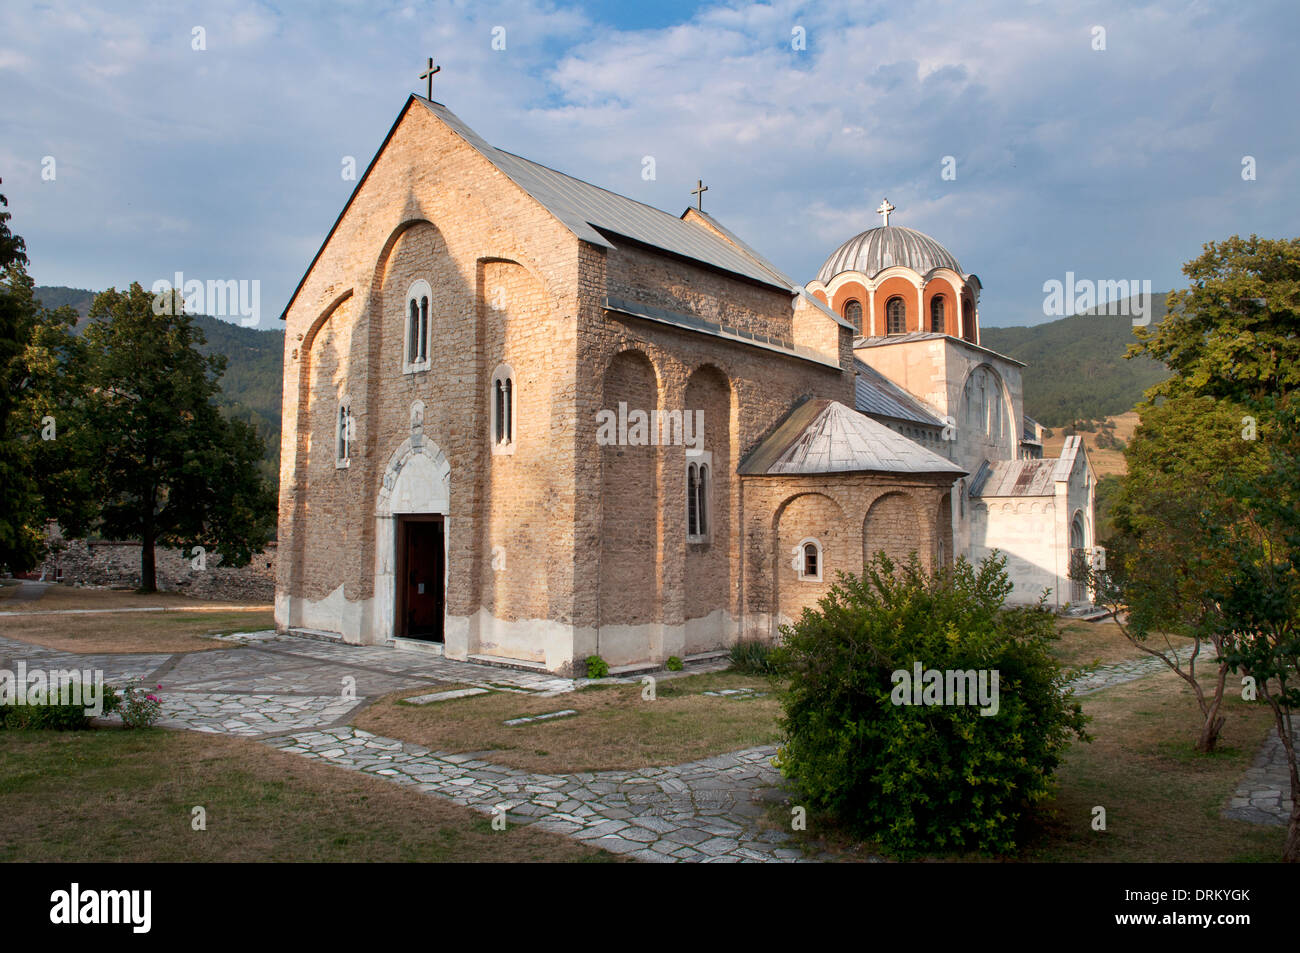 The Virgin's Church, Studenica Monastery, Kraljevo, Serbia Stock Photo